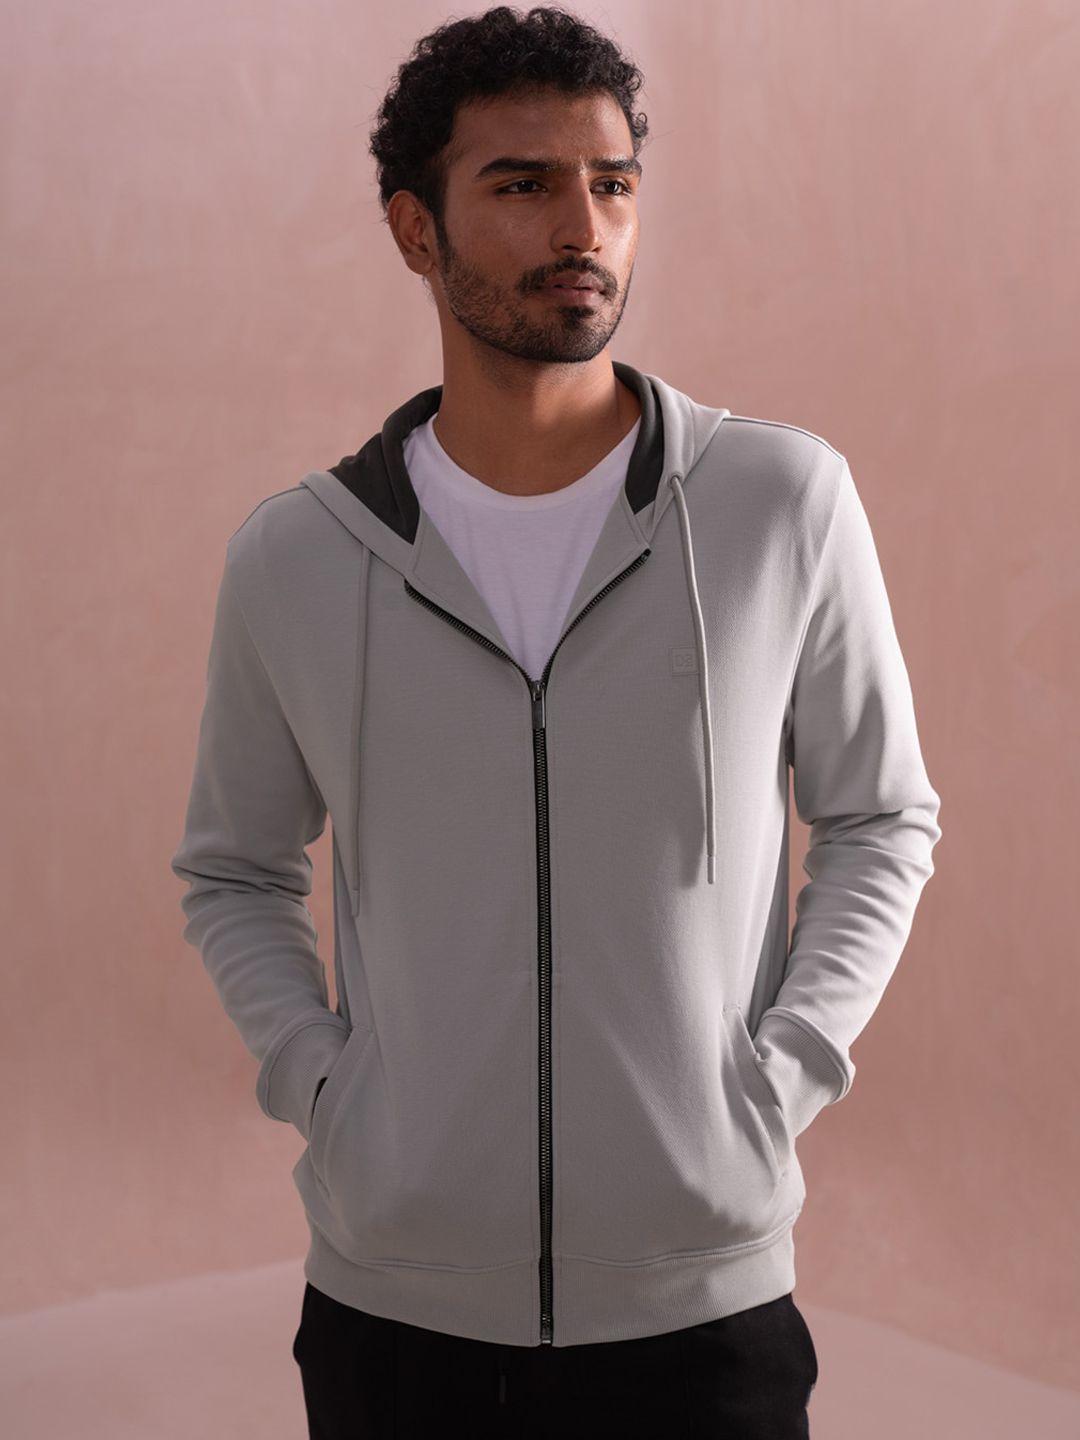 damensch statement elemental soft premium cotton blend zipper hoodie sweatshirt